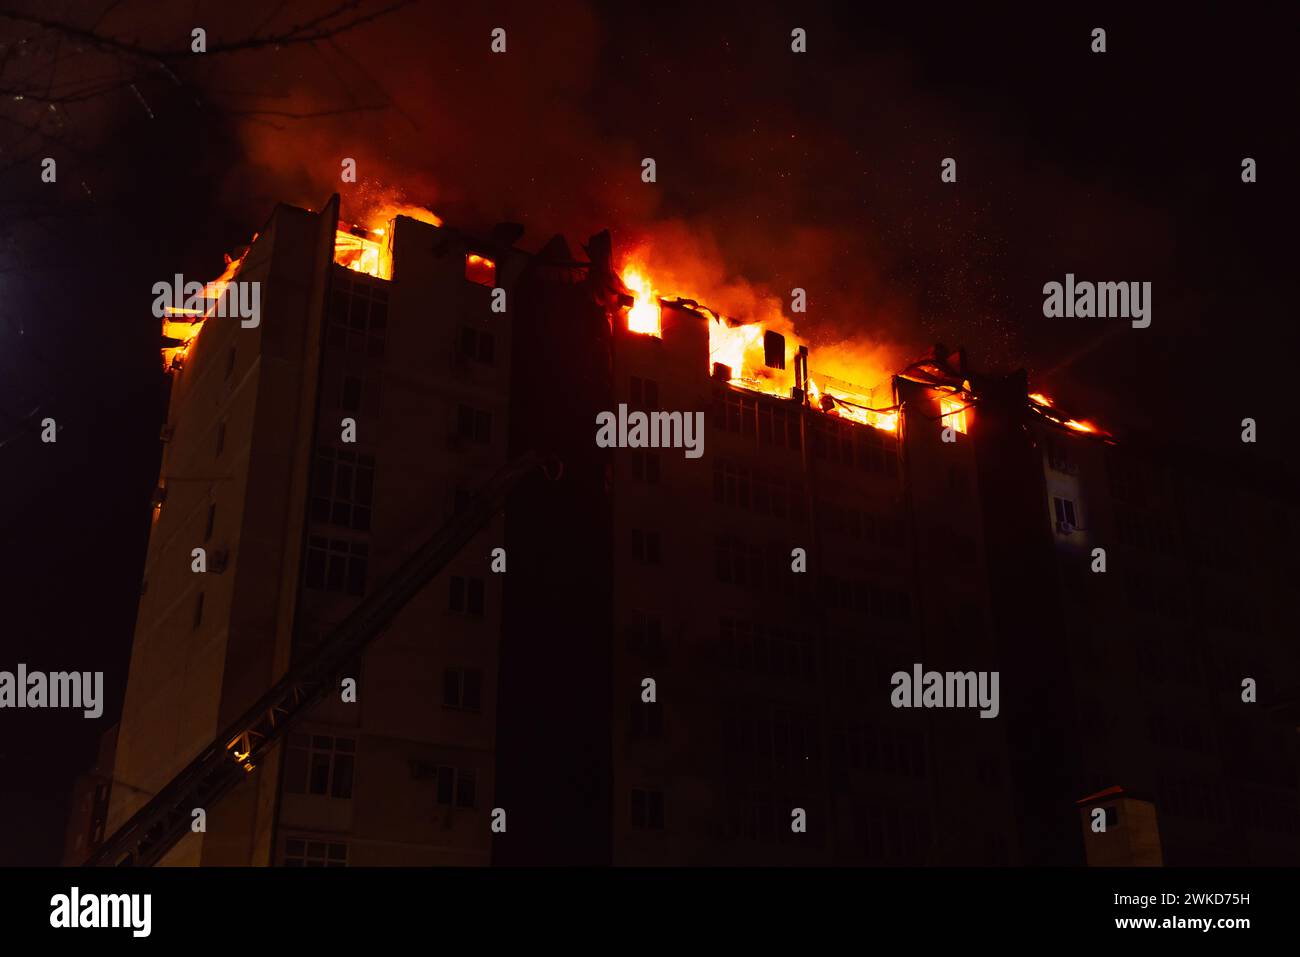 Ein riesiges Feuer brannte in einem mehrstöckigen Wohnhaus. Brennendes Haus ist nachts in Flammen verwickelt während der Katastrophe Stockfoto